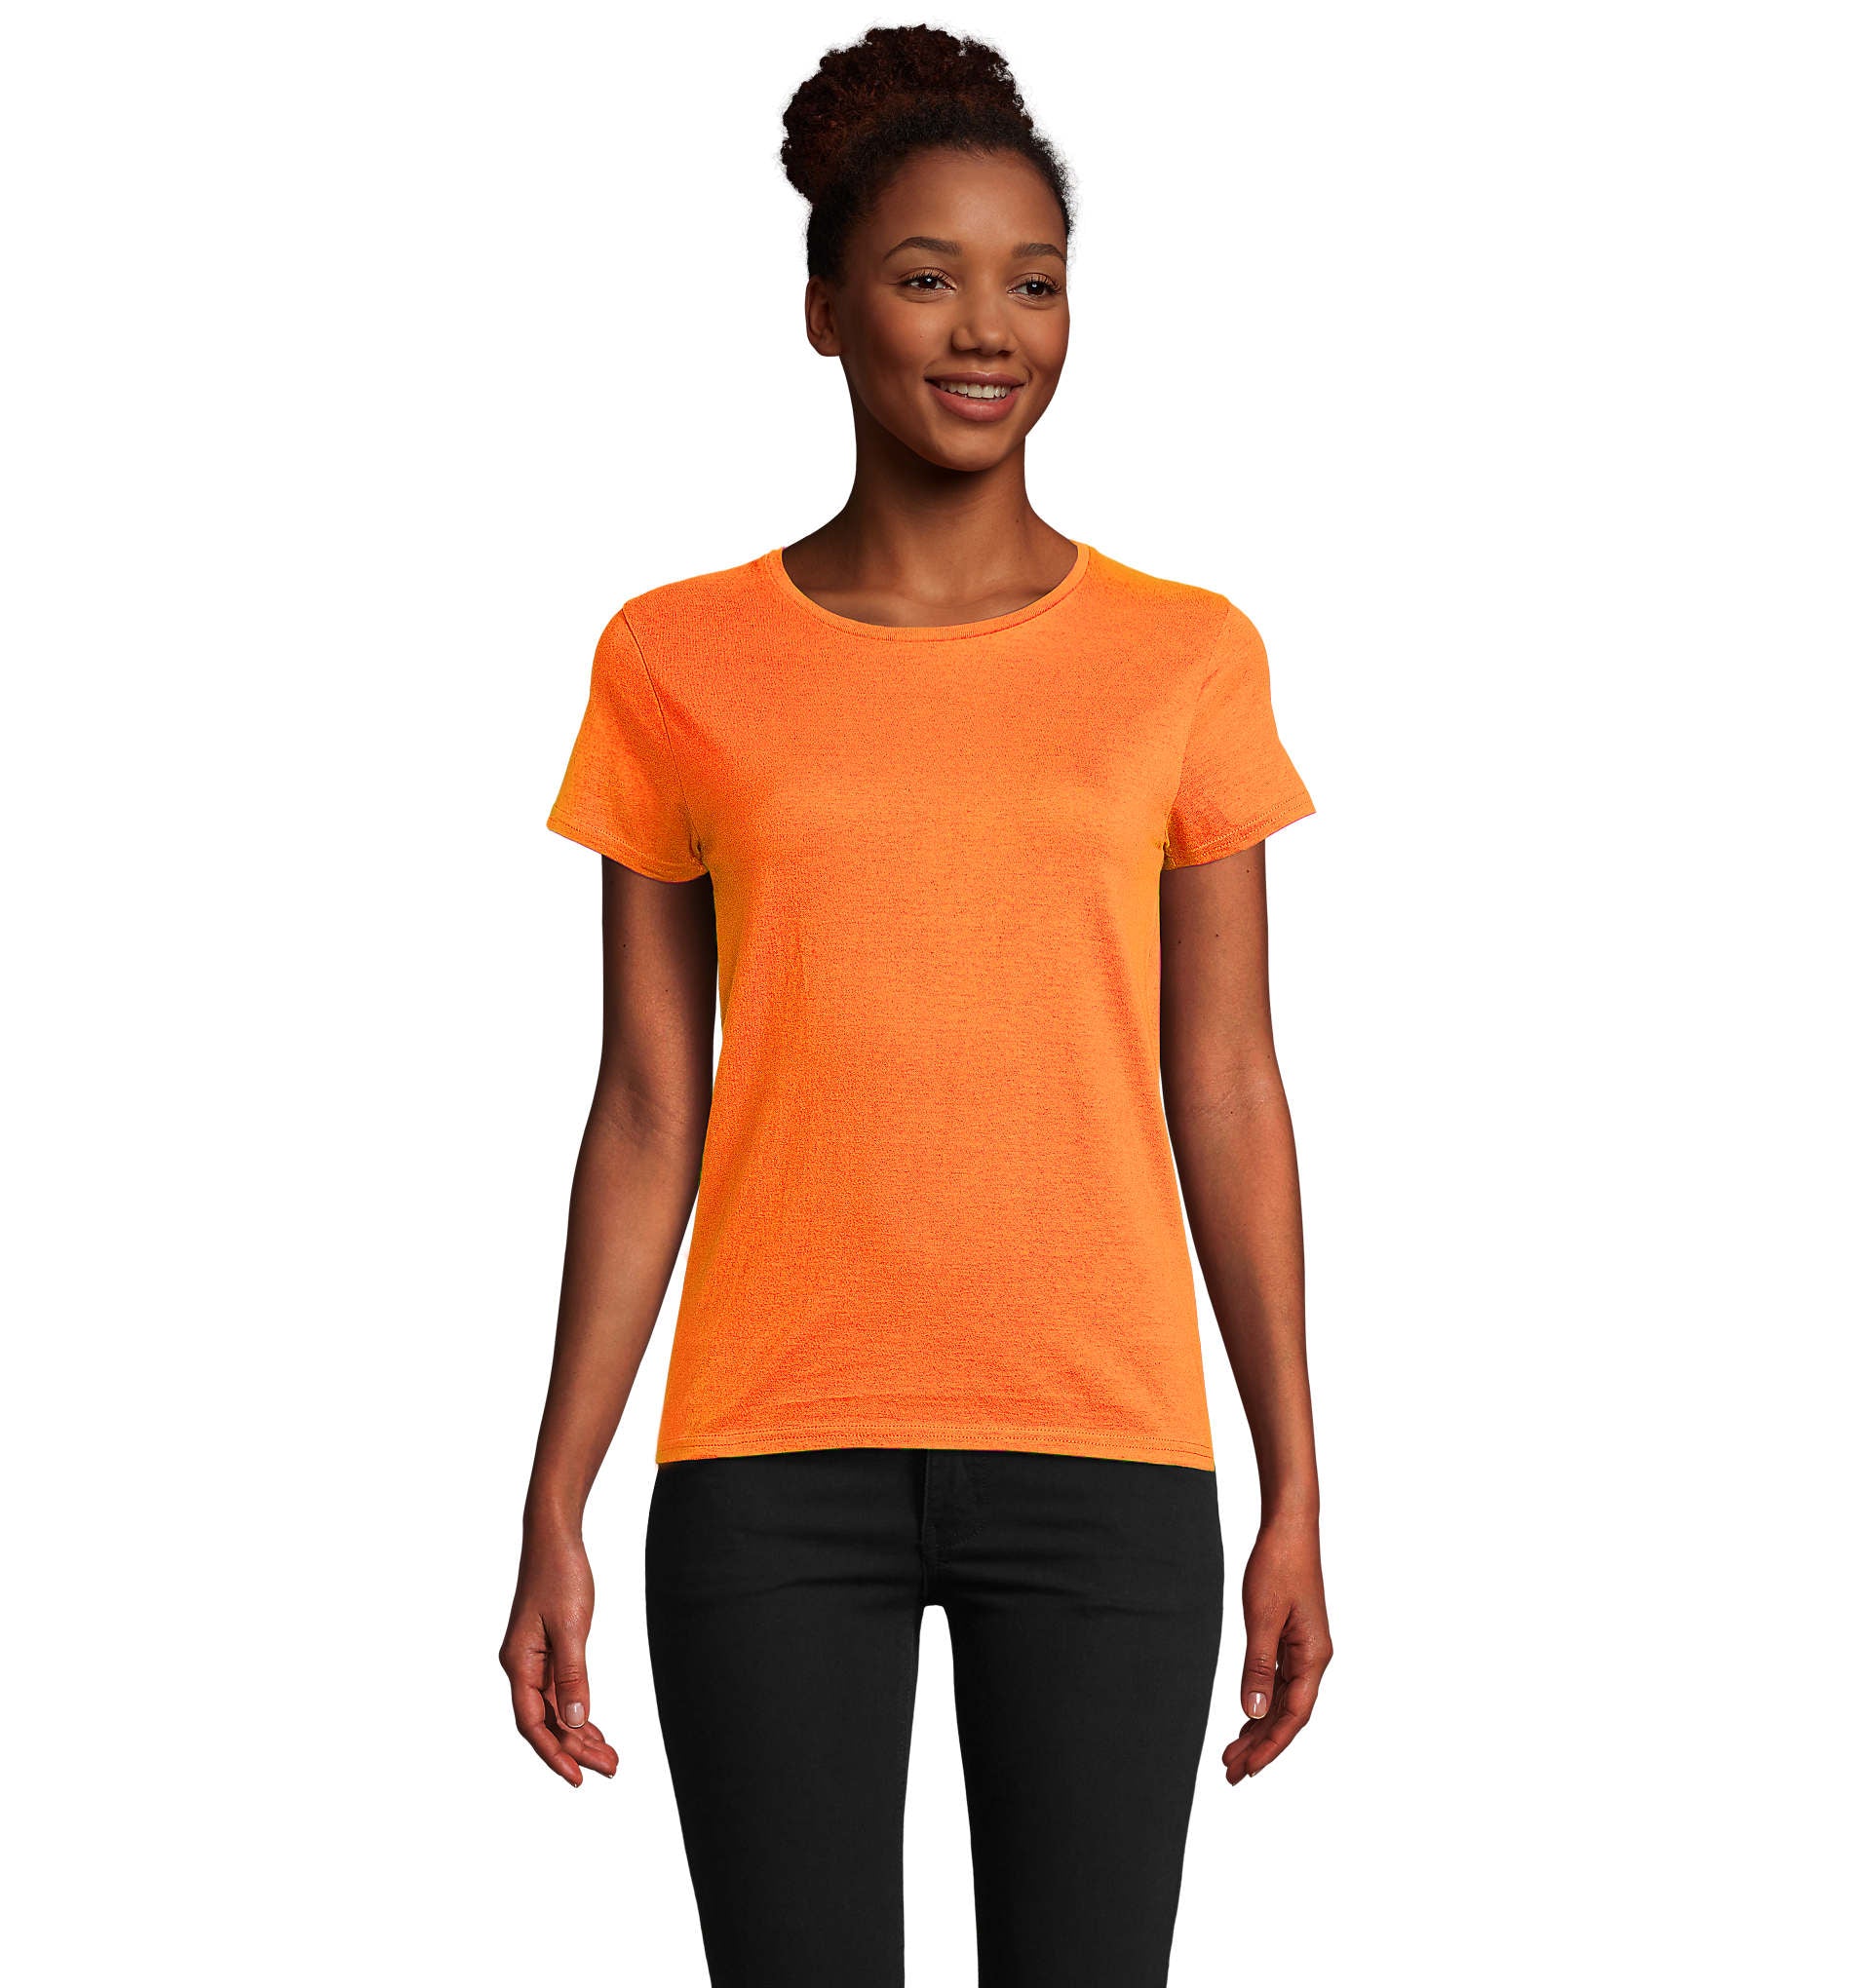 Camiseta manga larga mujer Organic naranja